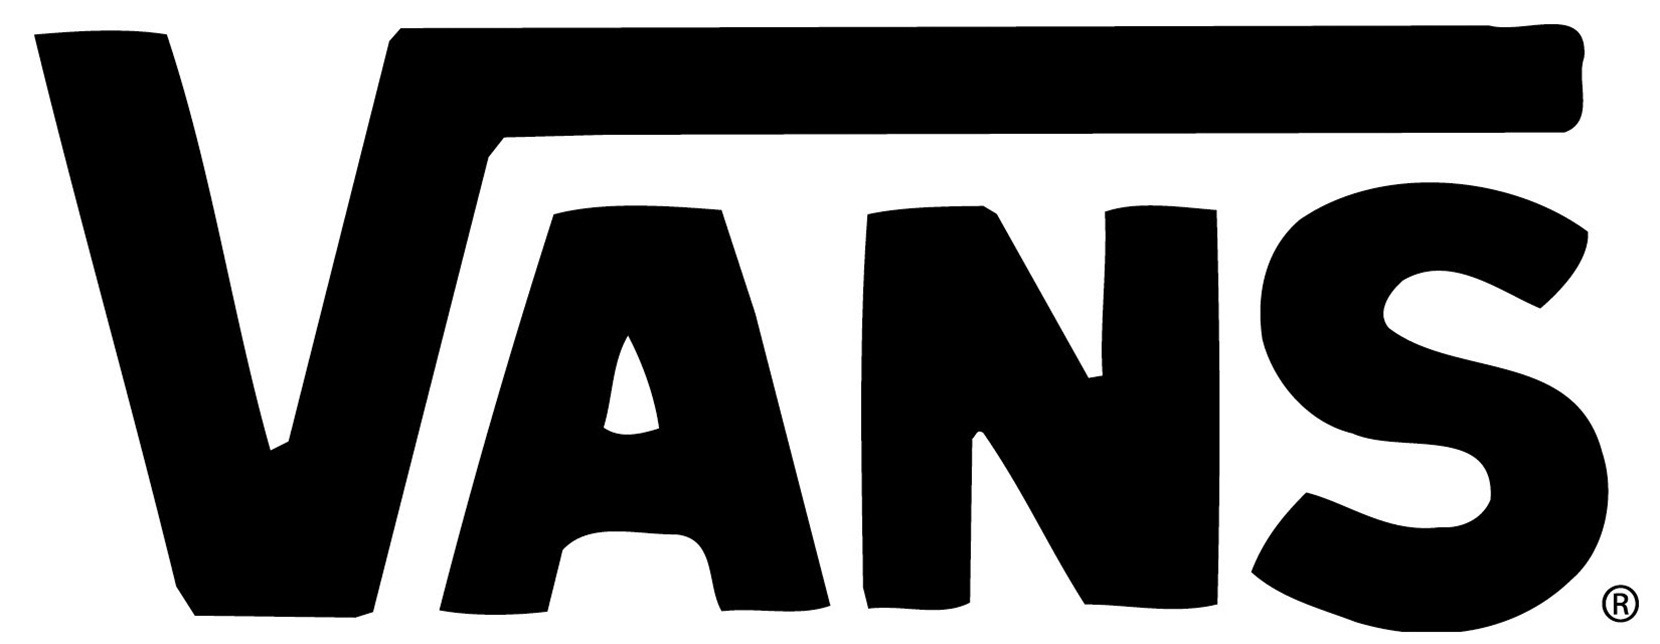 [77+] Vans Logo Wallpapers | WallpaperSafari